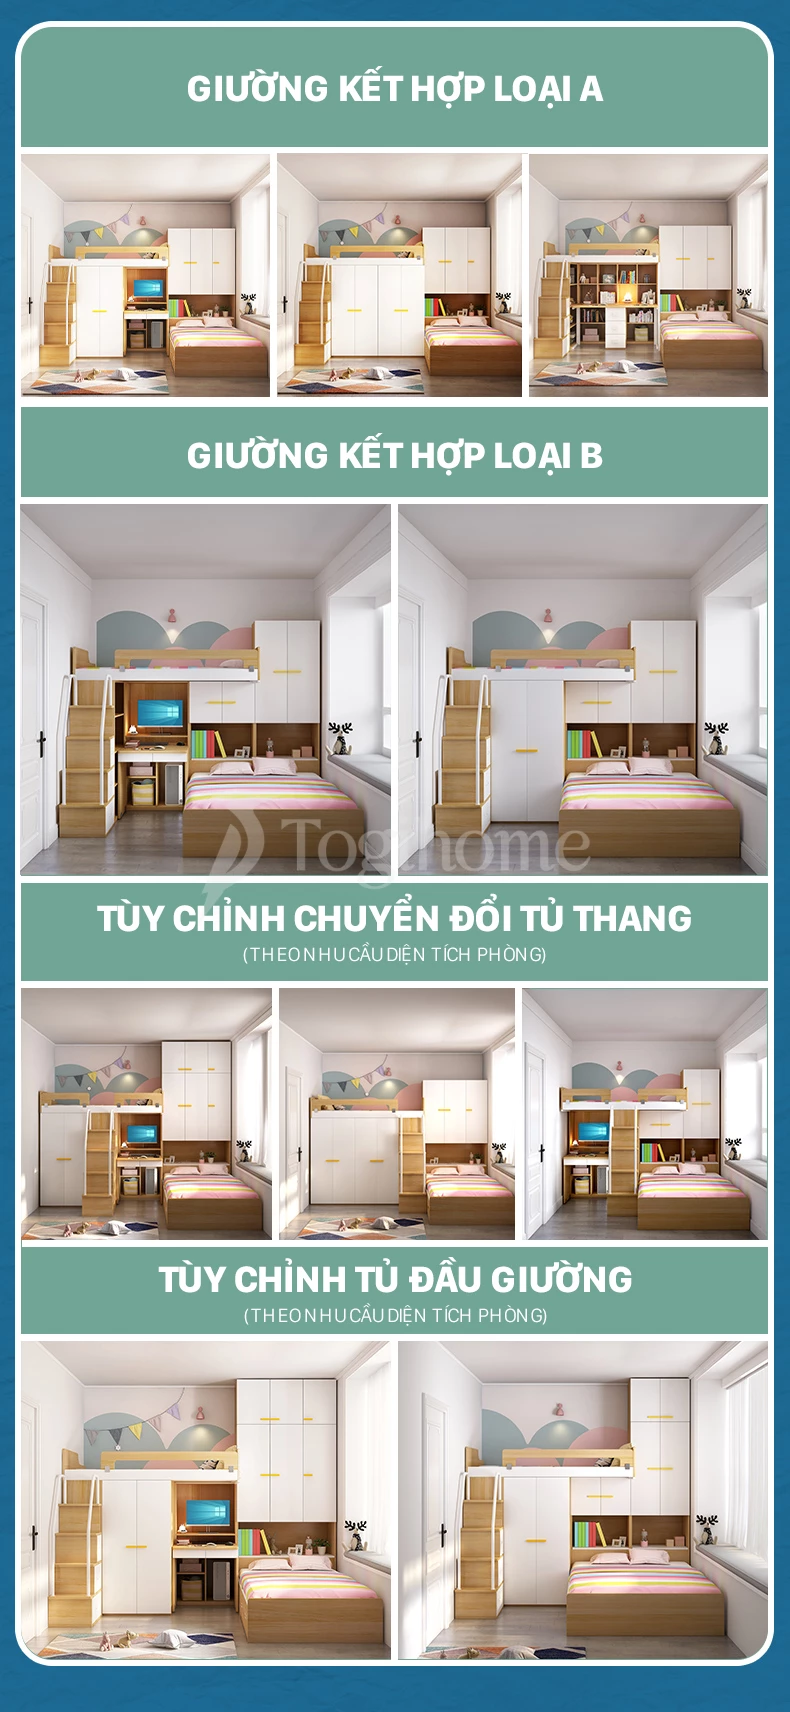 Bộ giường ngủ kết hợp tủ đồ và tủ cầu thang GTE019 siêu tiện lợi, đa năng, linh hoạt với thiết kế chuyển đổ tùy chỉnh